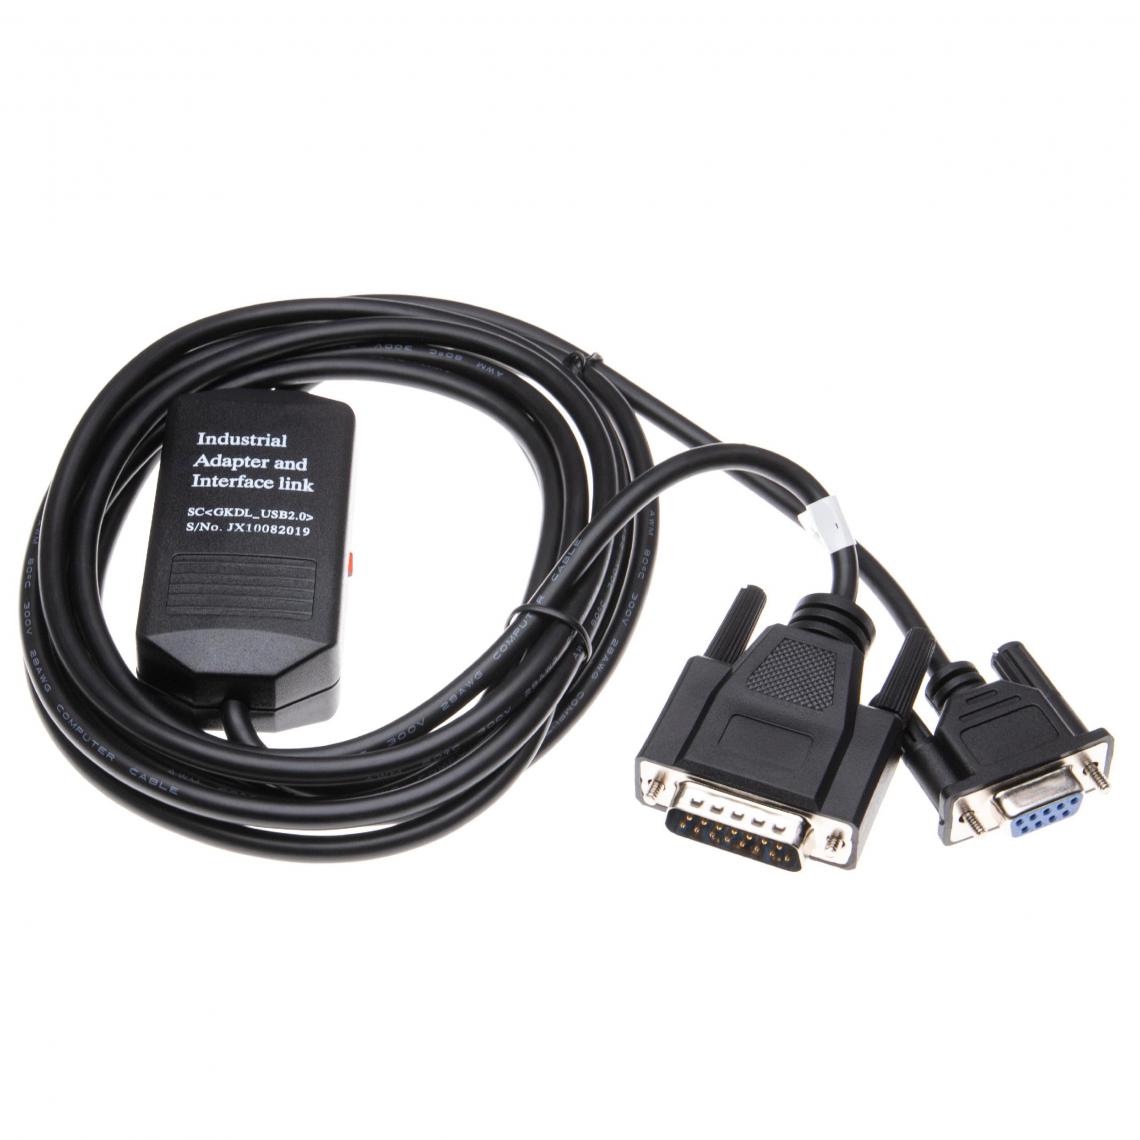 Vhbw - vhbw Câble de l'adaptateur série RS-232 pour les PCs et périphérique Siemens Simatic S5 CPU 944, 944B, 945 300cm noir - Accessoires alimentation